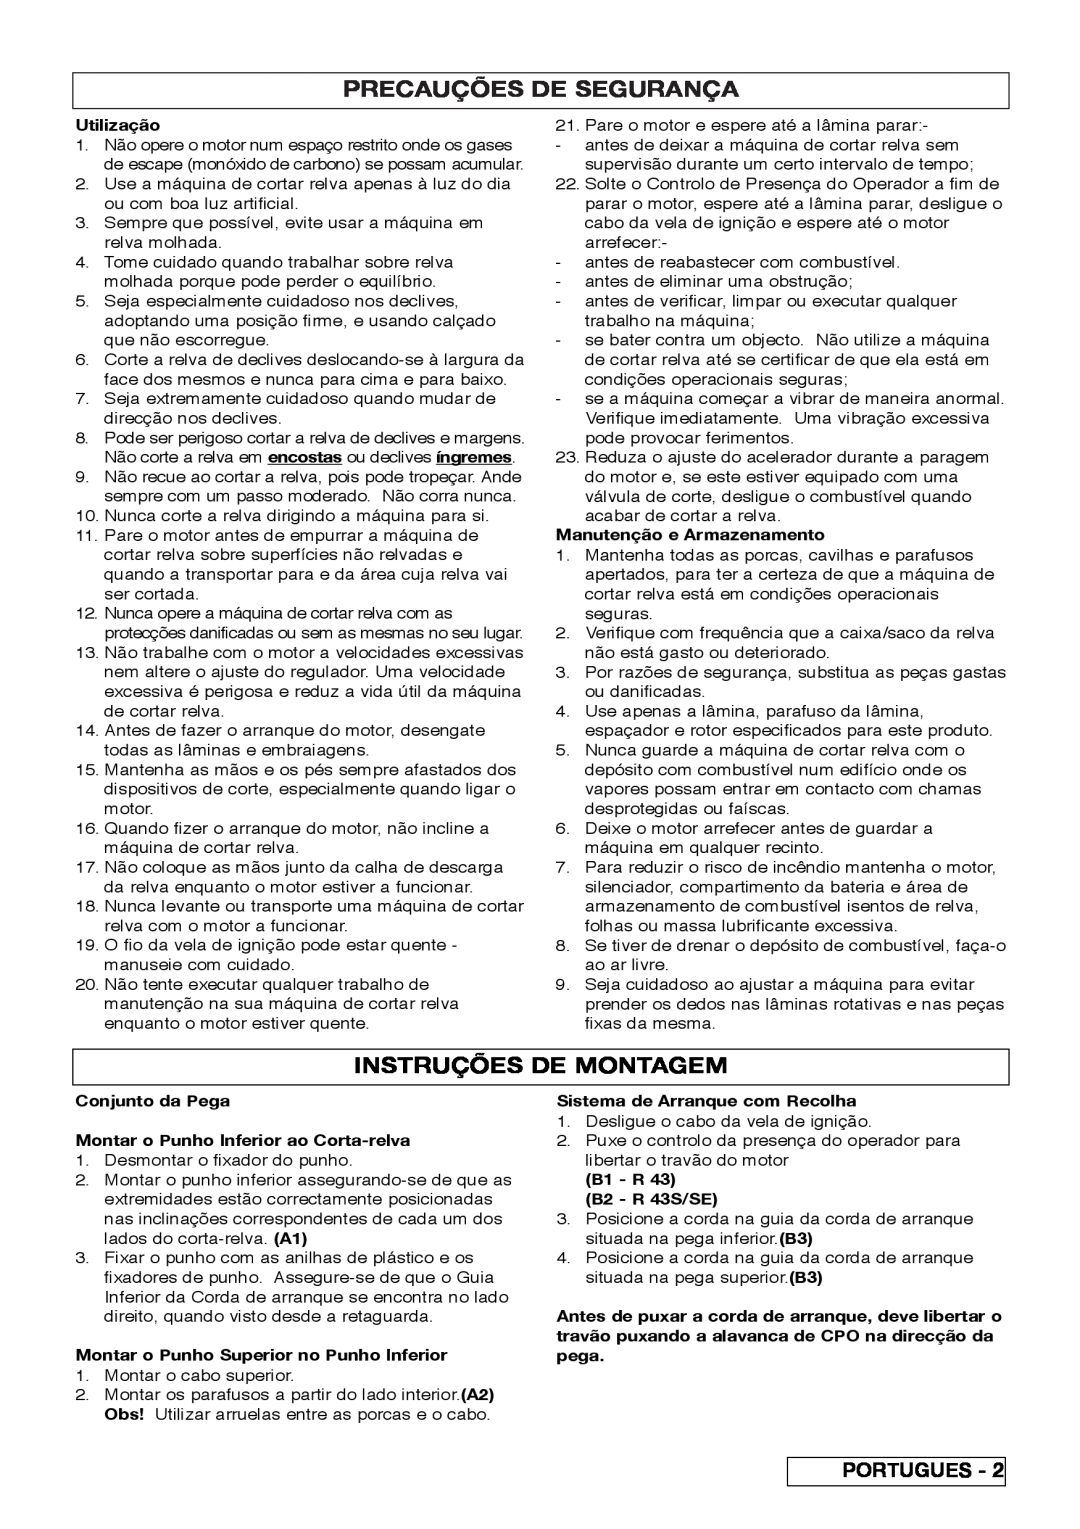 Husqvarna R 43SE manual Precauções De Segurança, Instruções De Montagem 